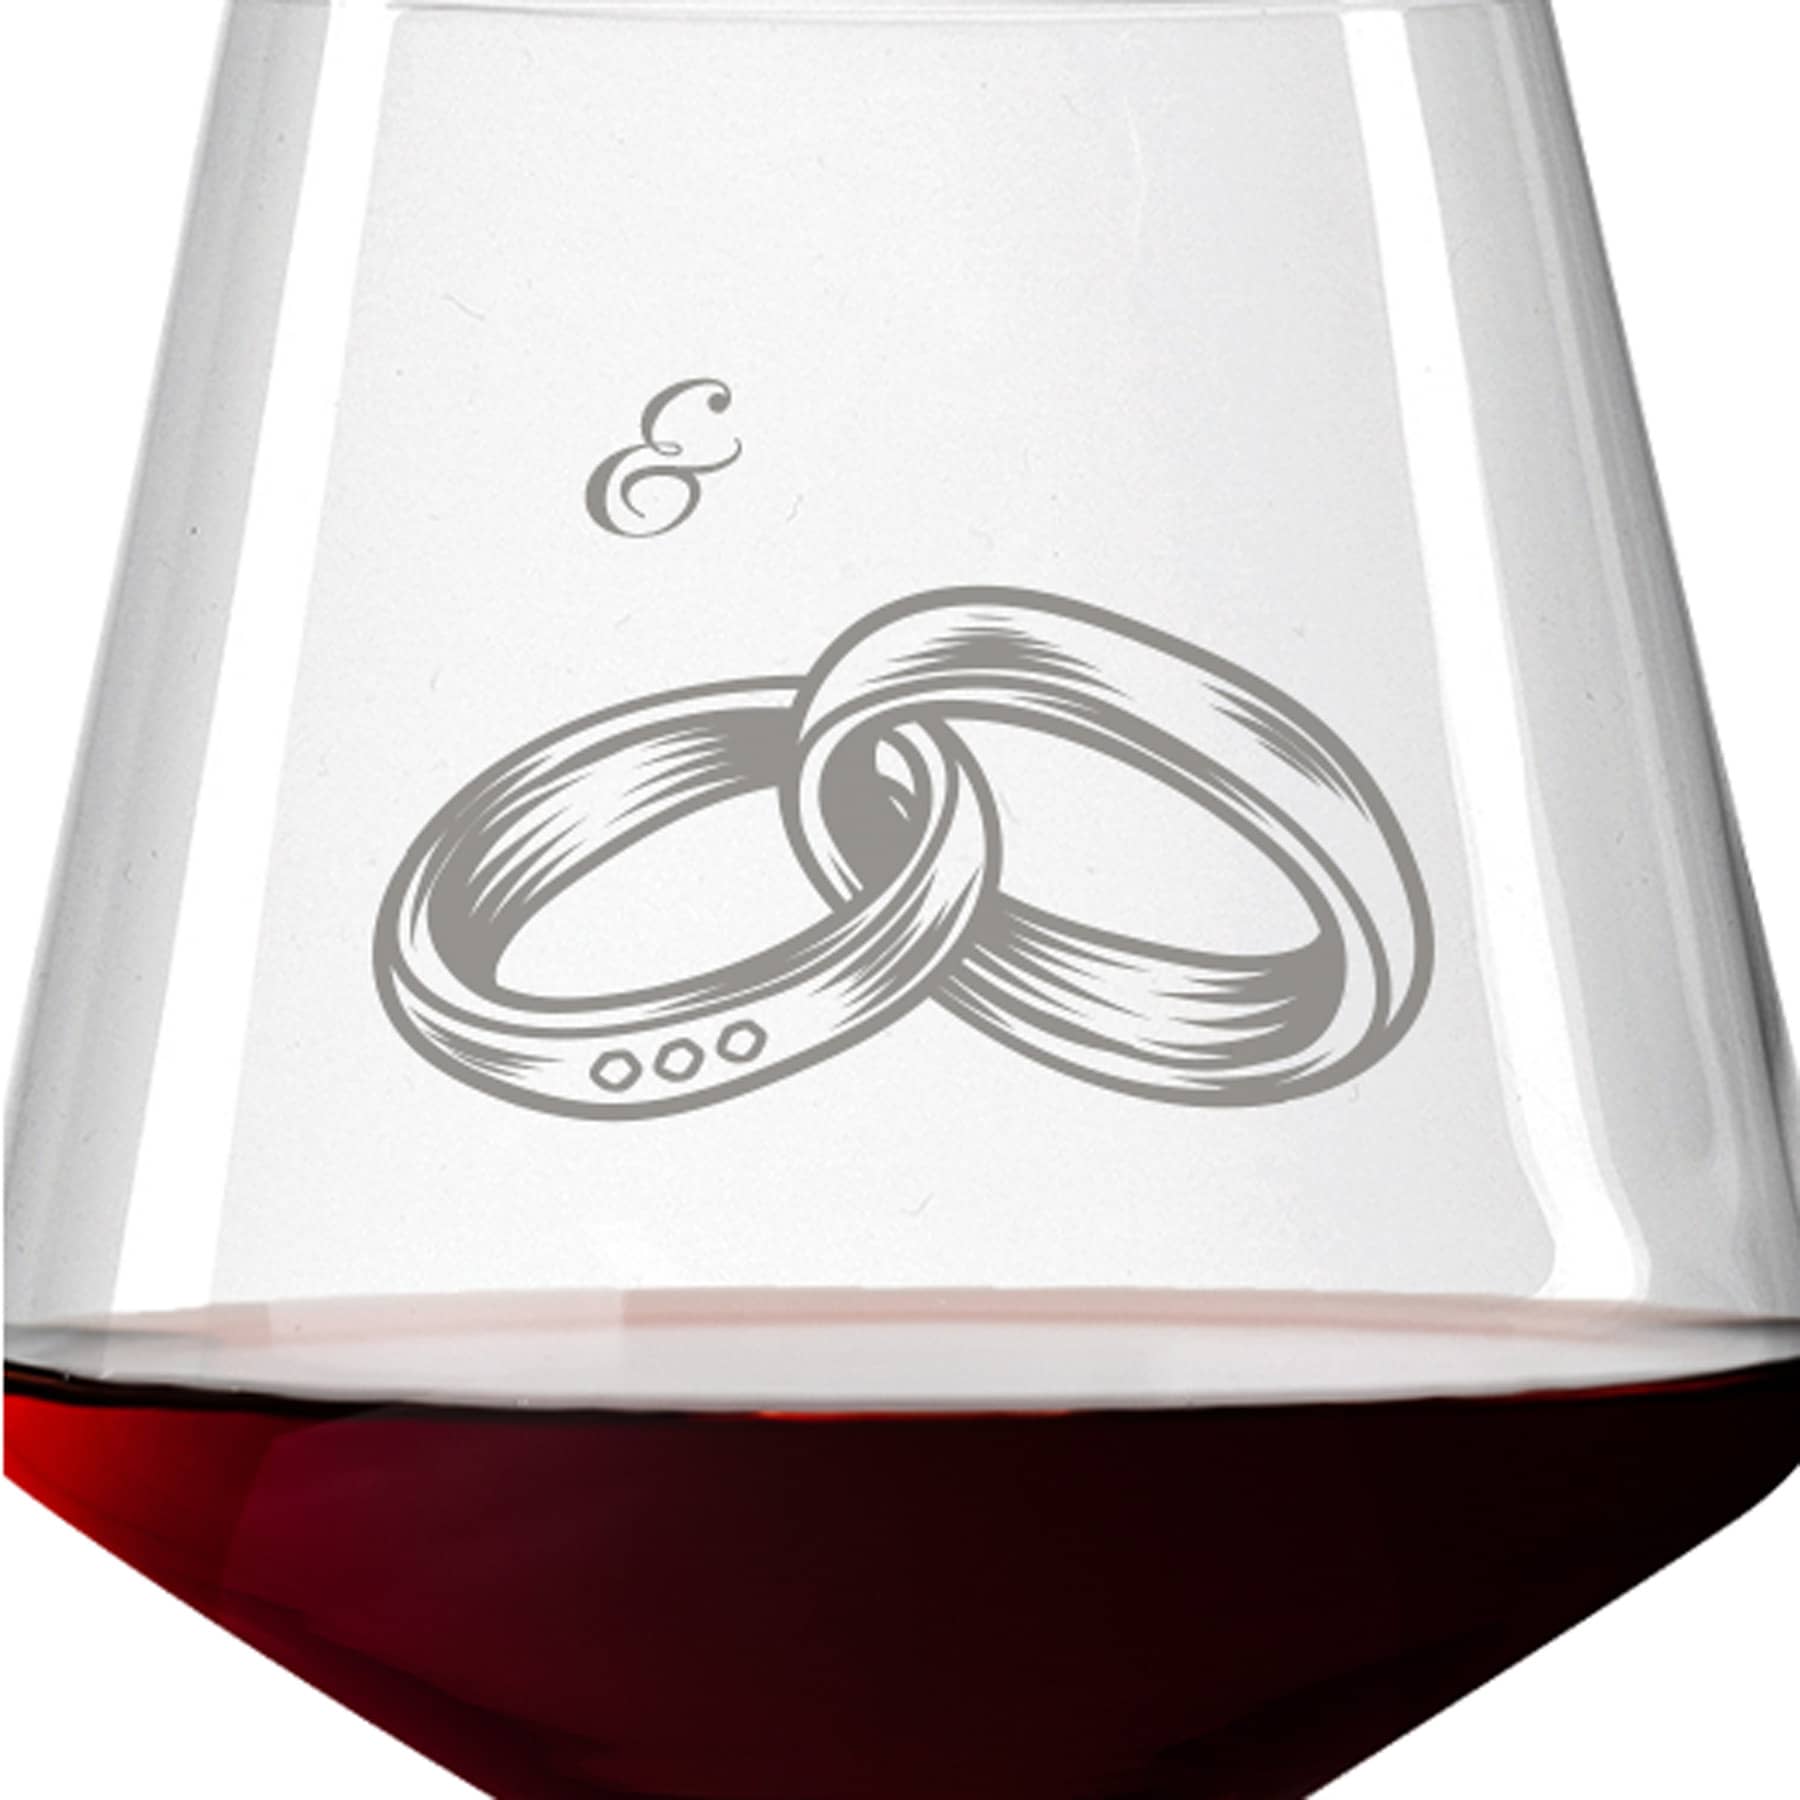 Leonardo Burgunderglas Rotweinglas PUCCINI 730ml mit Namen oder Wunschtext graviert (Eheringe)